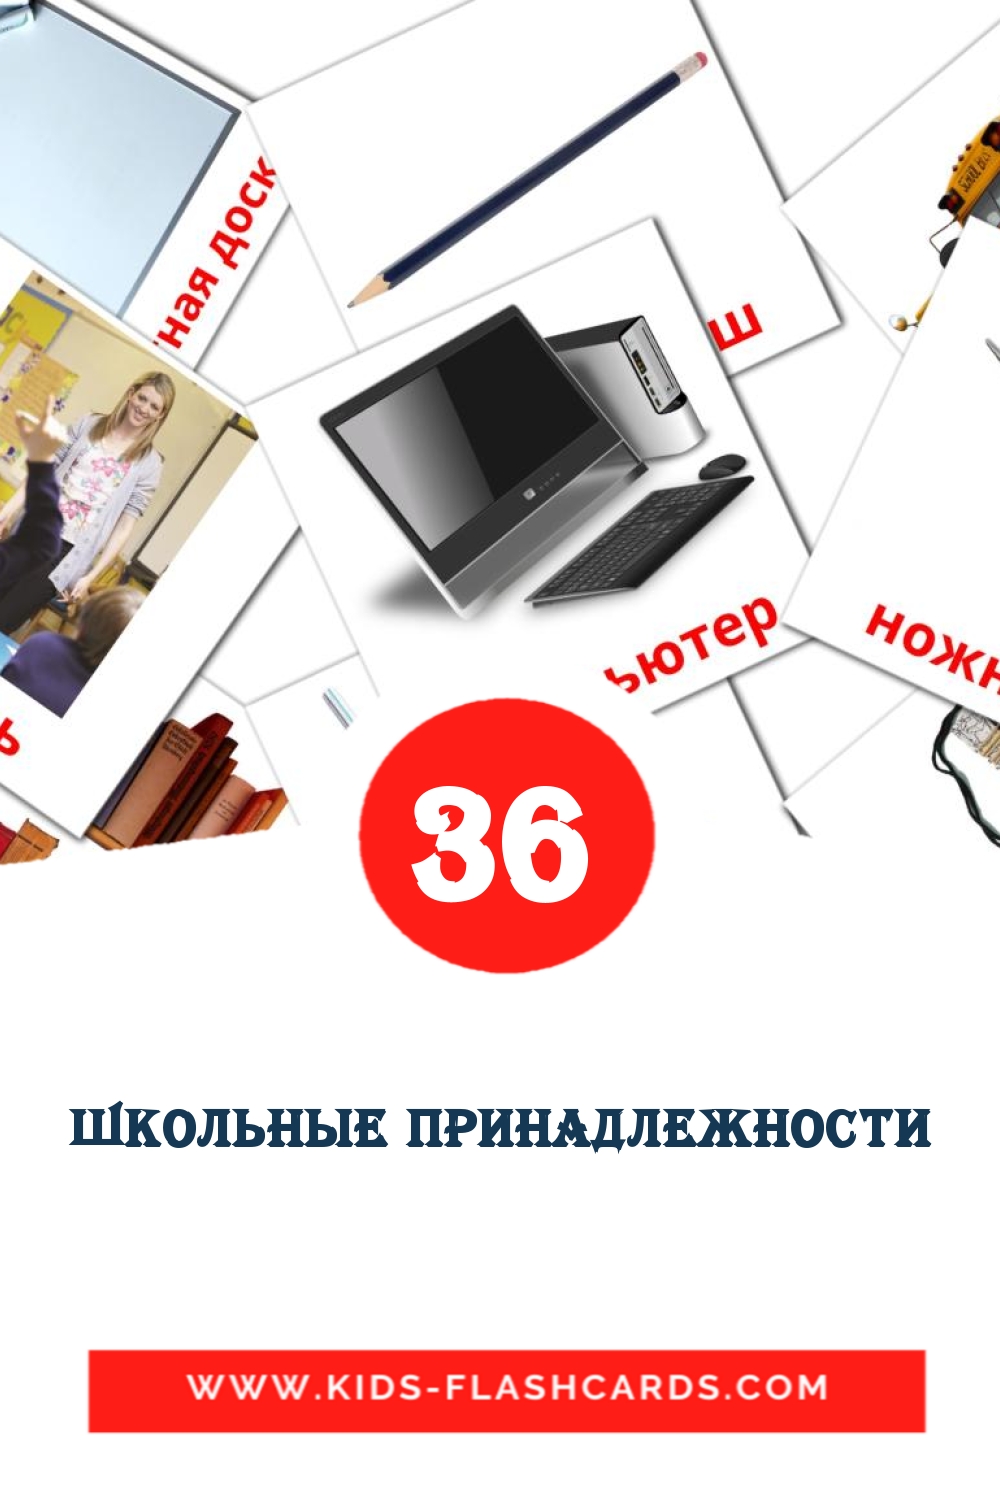 Школьные принадлежности на русском для Детского Сада (36 карточек)